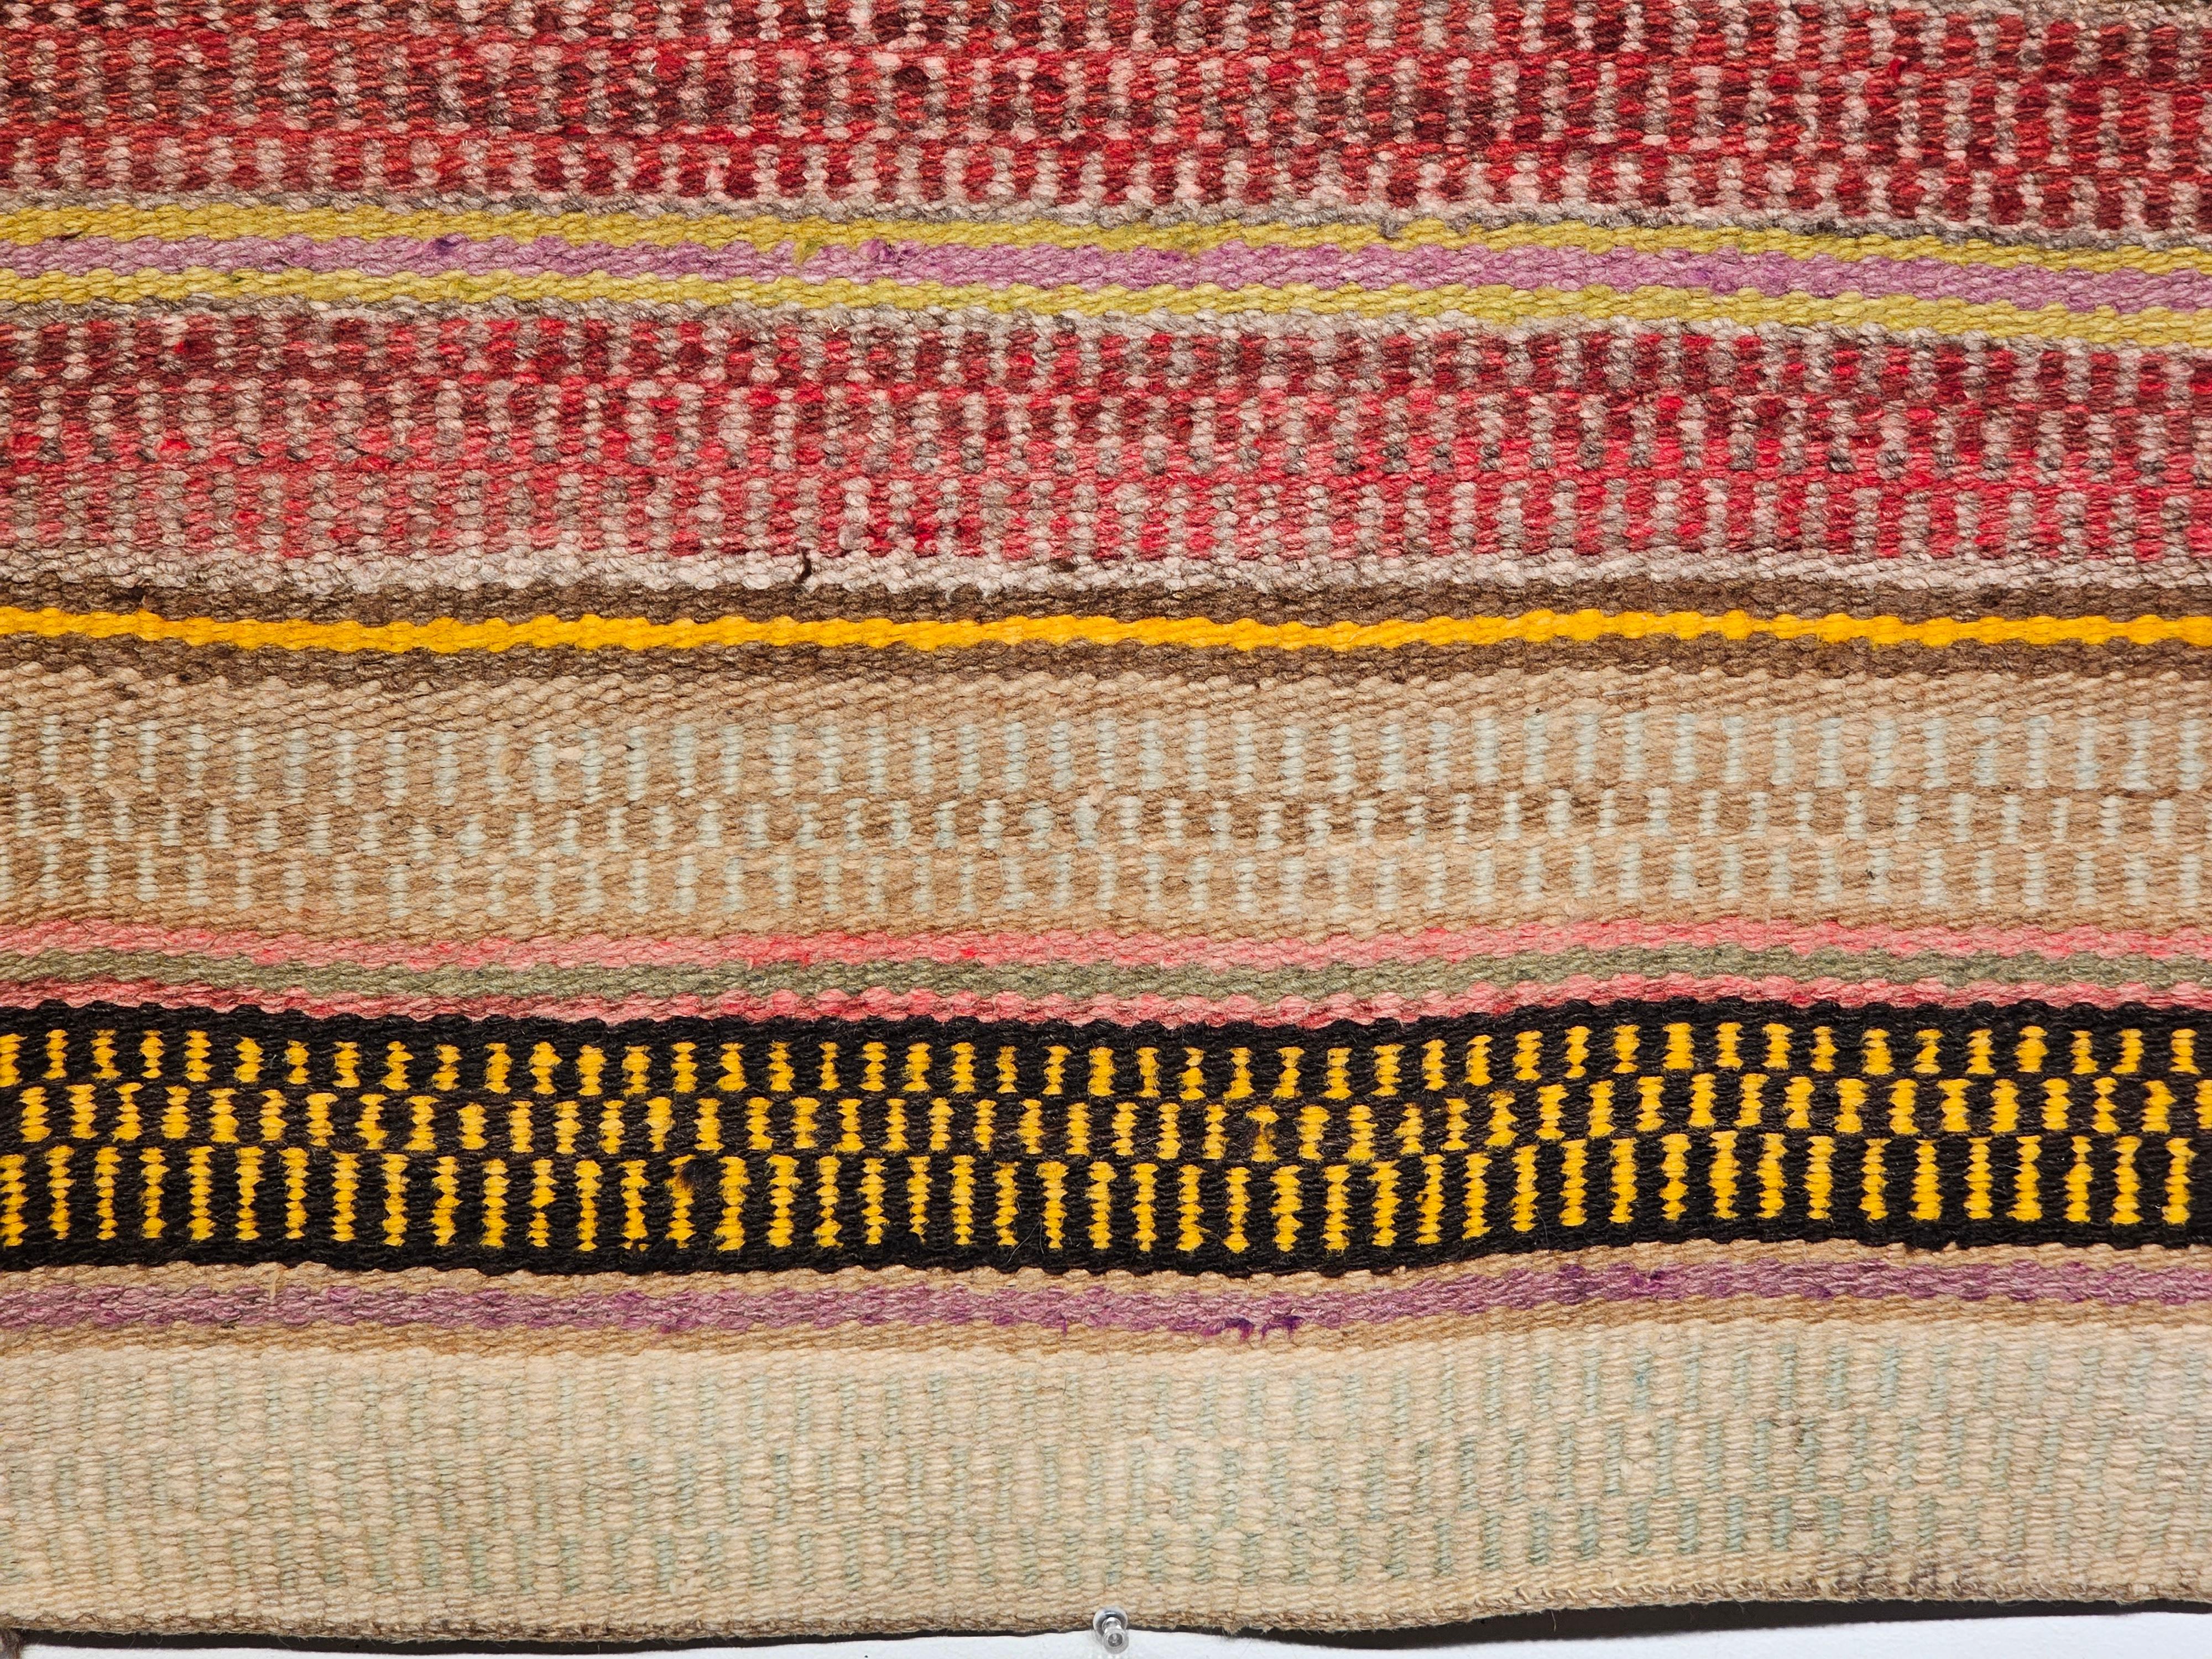  Eine Navajo-Satteldecke im Streifendesign mit schönen natürlichen Erdtönen wie Rot, Braun und Karamell auf einem taupefarbenen Hintergrund, der durch schmale Streifen aus der Mitte des 19.  Das Design dieses Navajo-Teppichs ähnelt dem Design der